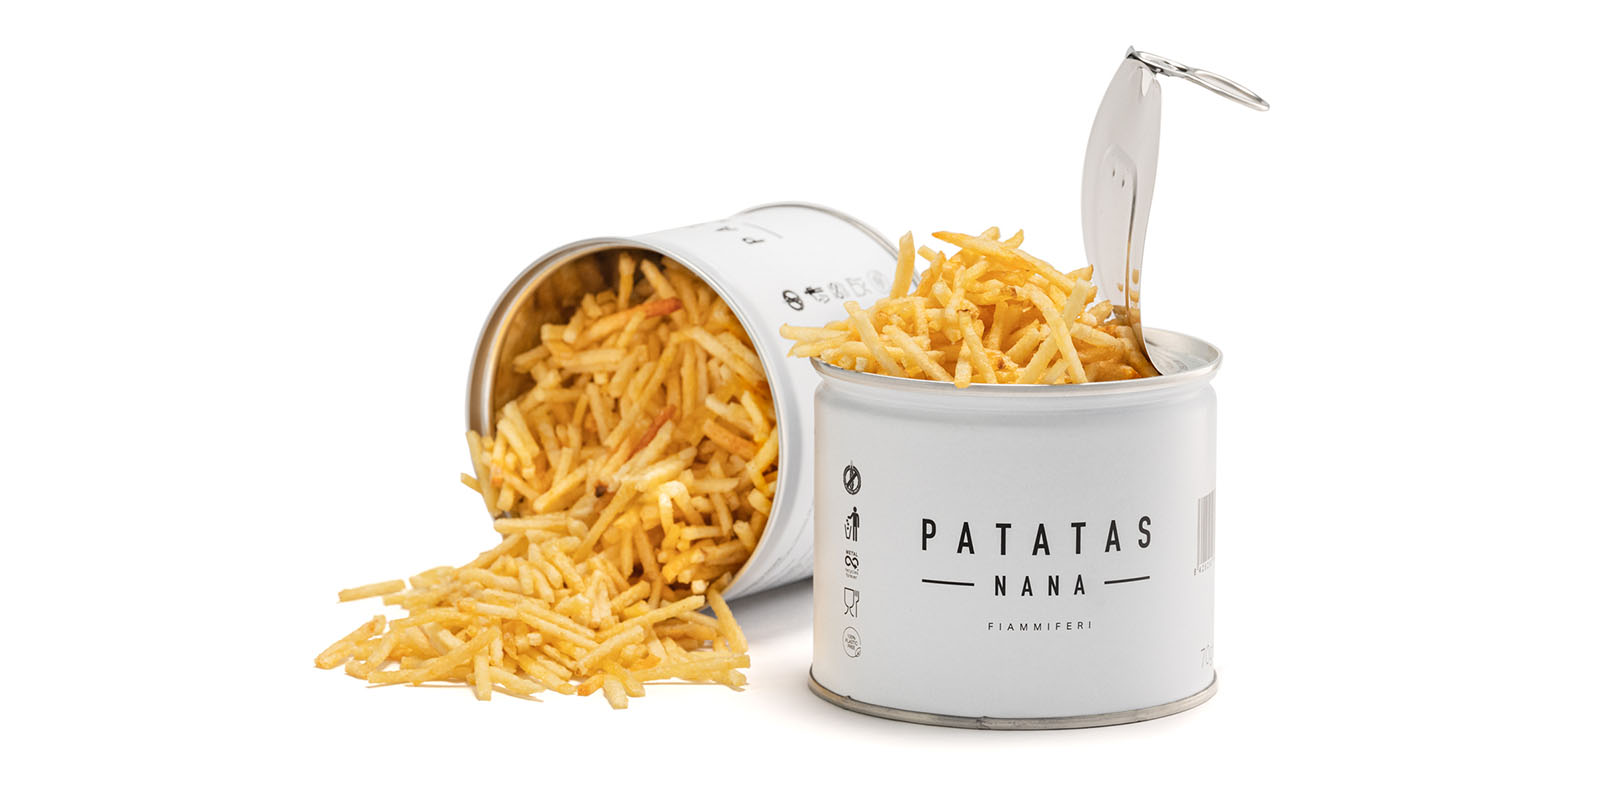 Patatas Nana lancia un nuovo prodotto totalmente ecosostenibile.⁣ I fiammiferi di Patatas Nana